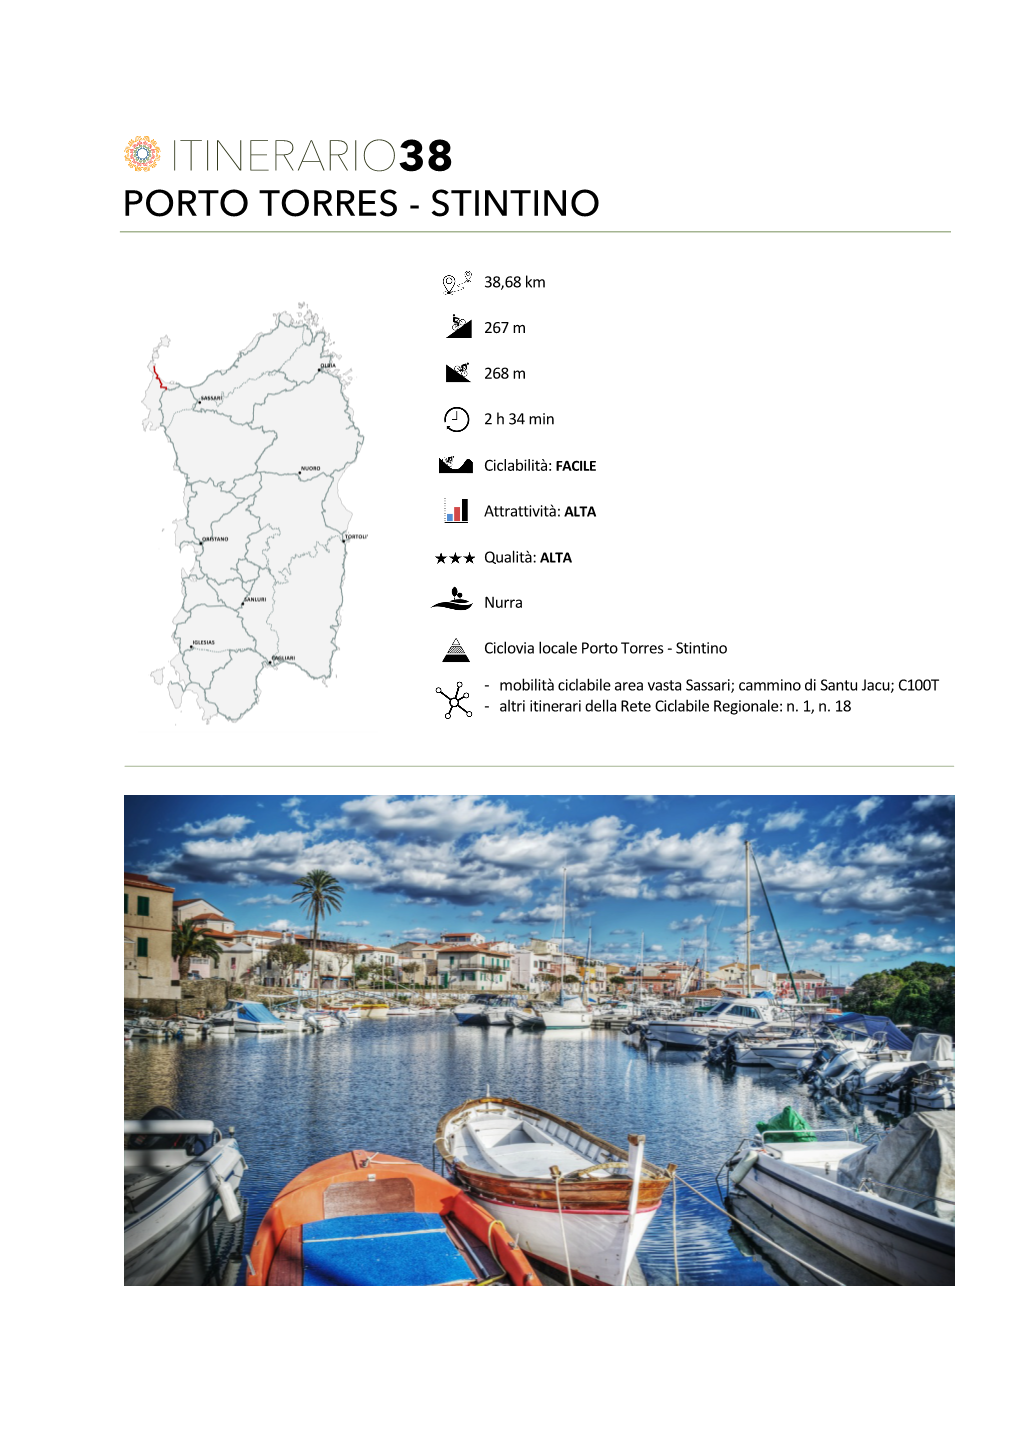 Itinerario38 Porto Torres - Stintino